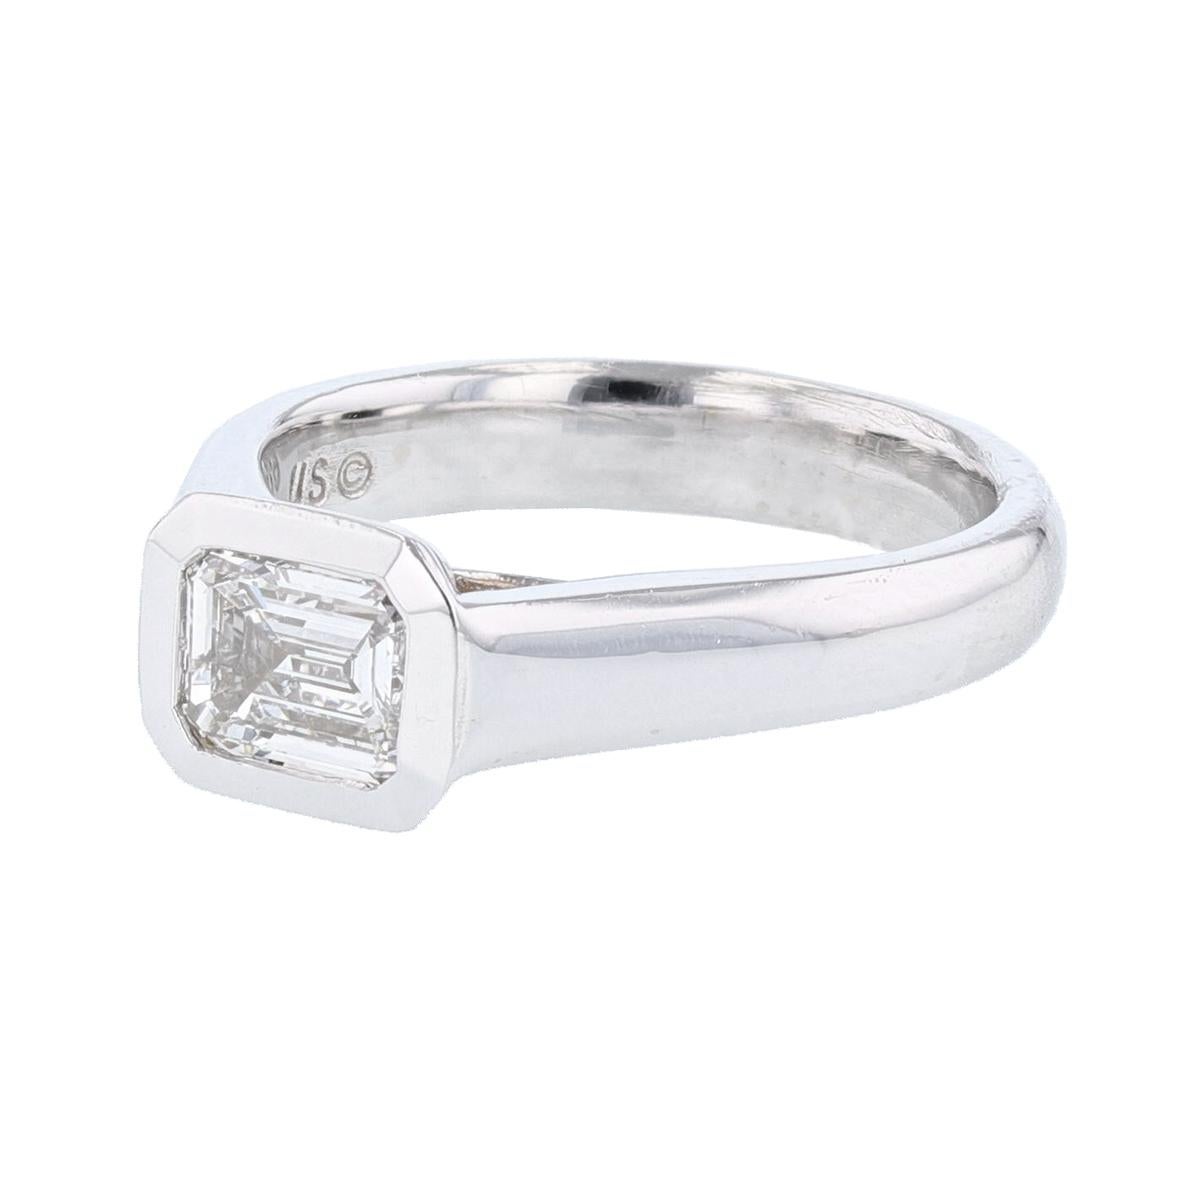 Dieser Ring ist mit 14 Karat Weißgold gefertigt und verfügt über eine Lünette gesetzt  1.01ct  IGI-zertifizierter Diamant im Smaragdschliff (IGI-Zertifizierungsnummer 9209818), mit einem Farbgrad (E) und einem Reinheitsgrad (SI2). 